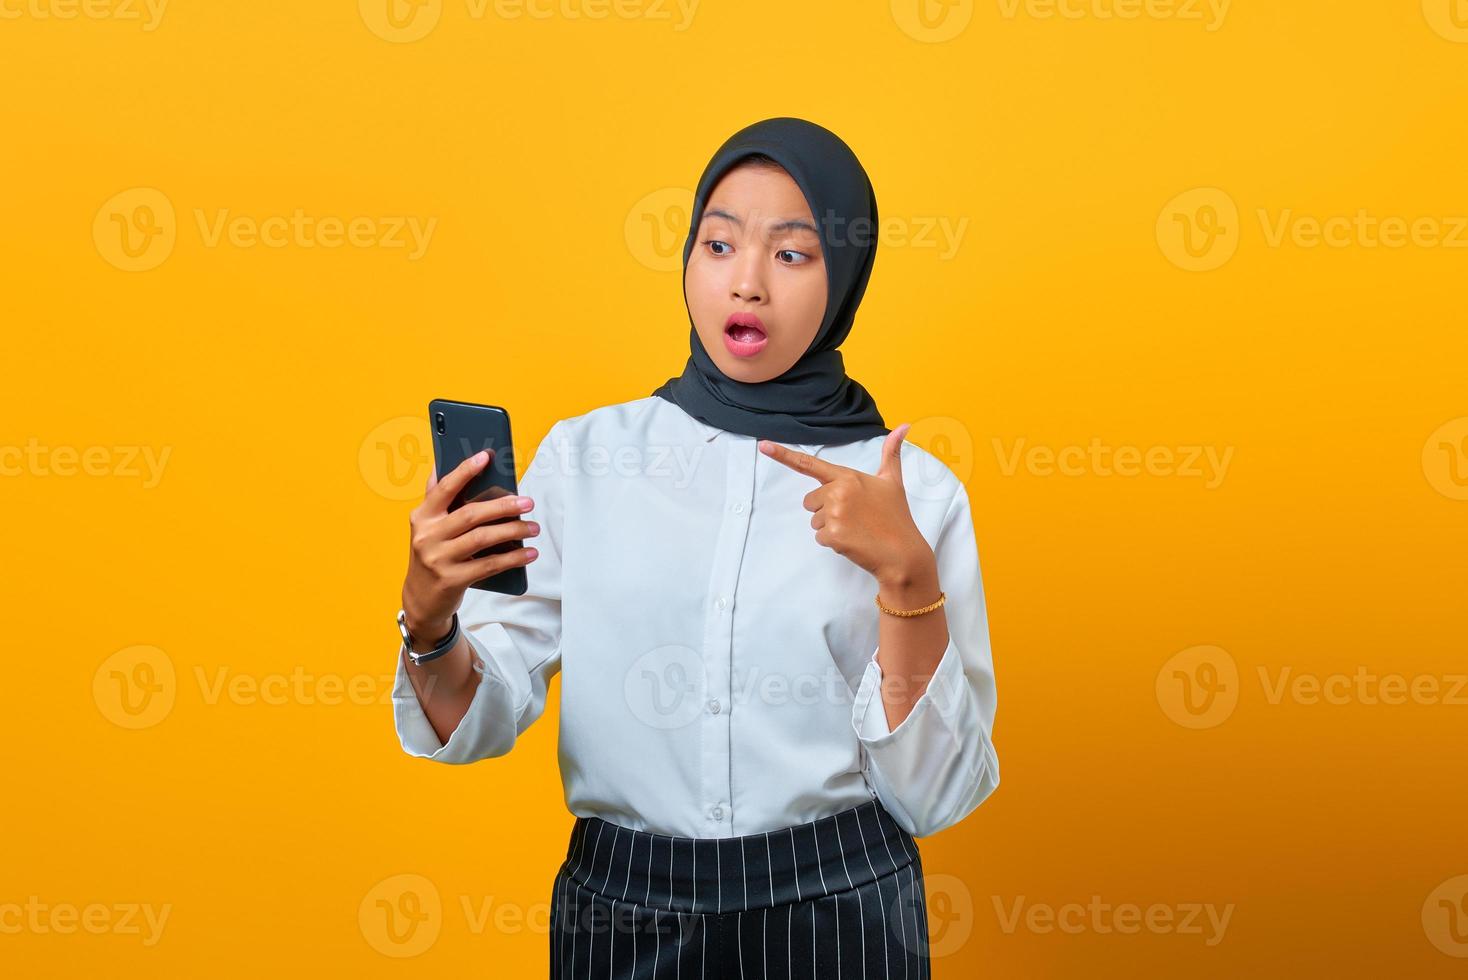 förvånad ung asiatisk kvinna som pekar på mobiltelefon isolerad över gul bakgrund foto